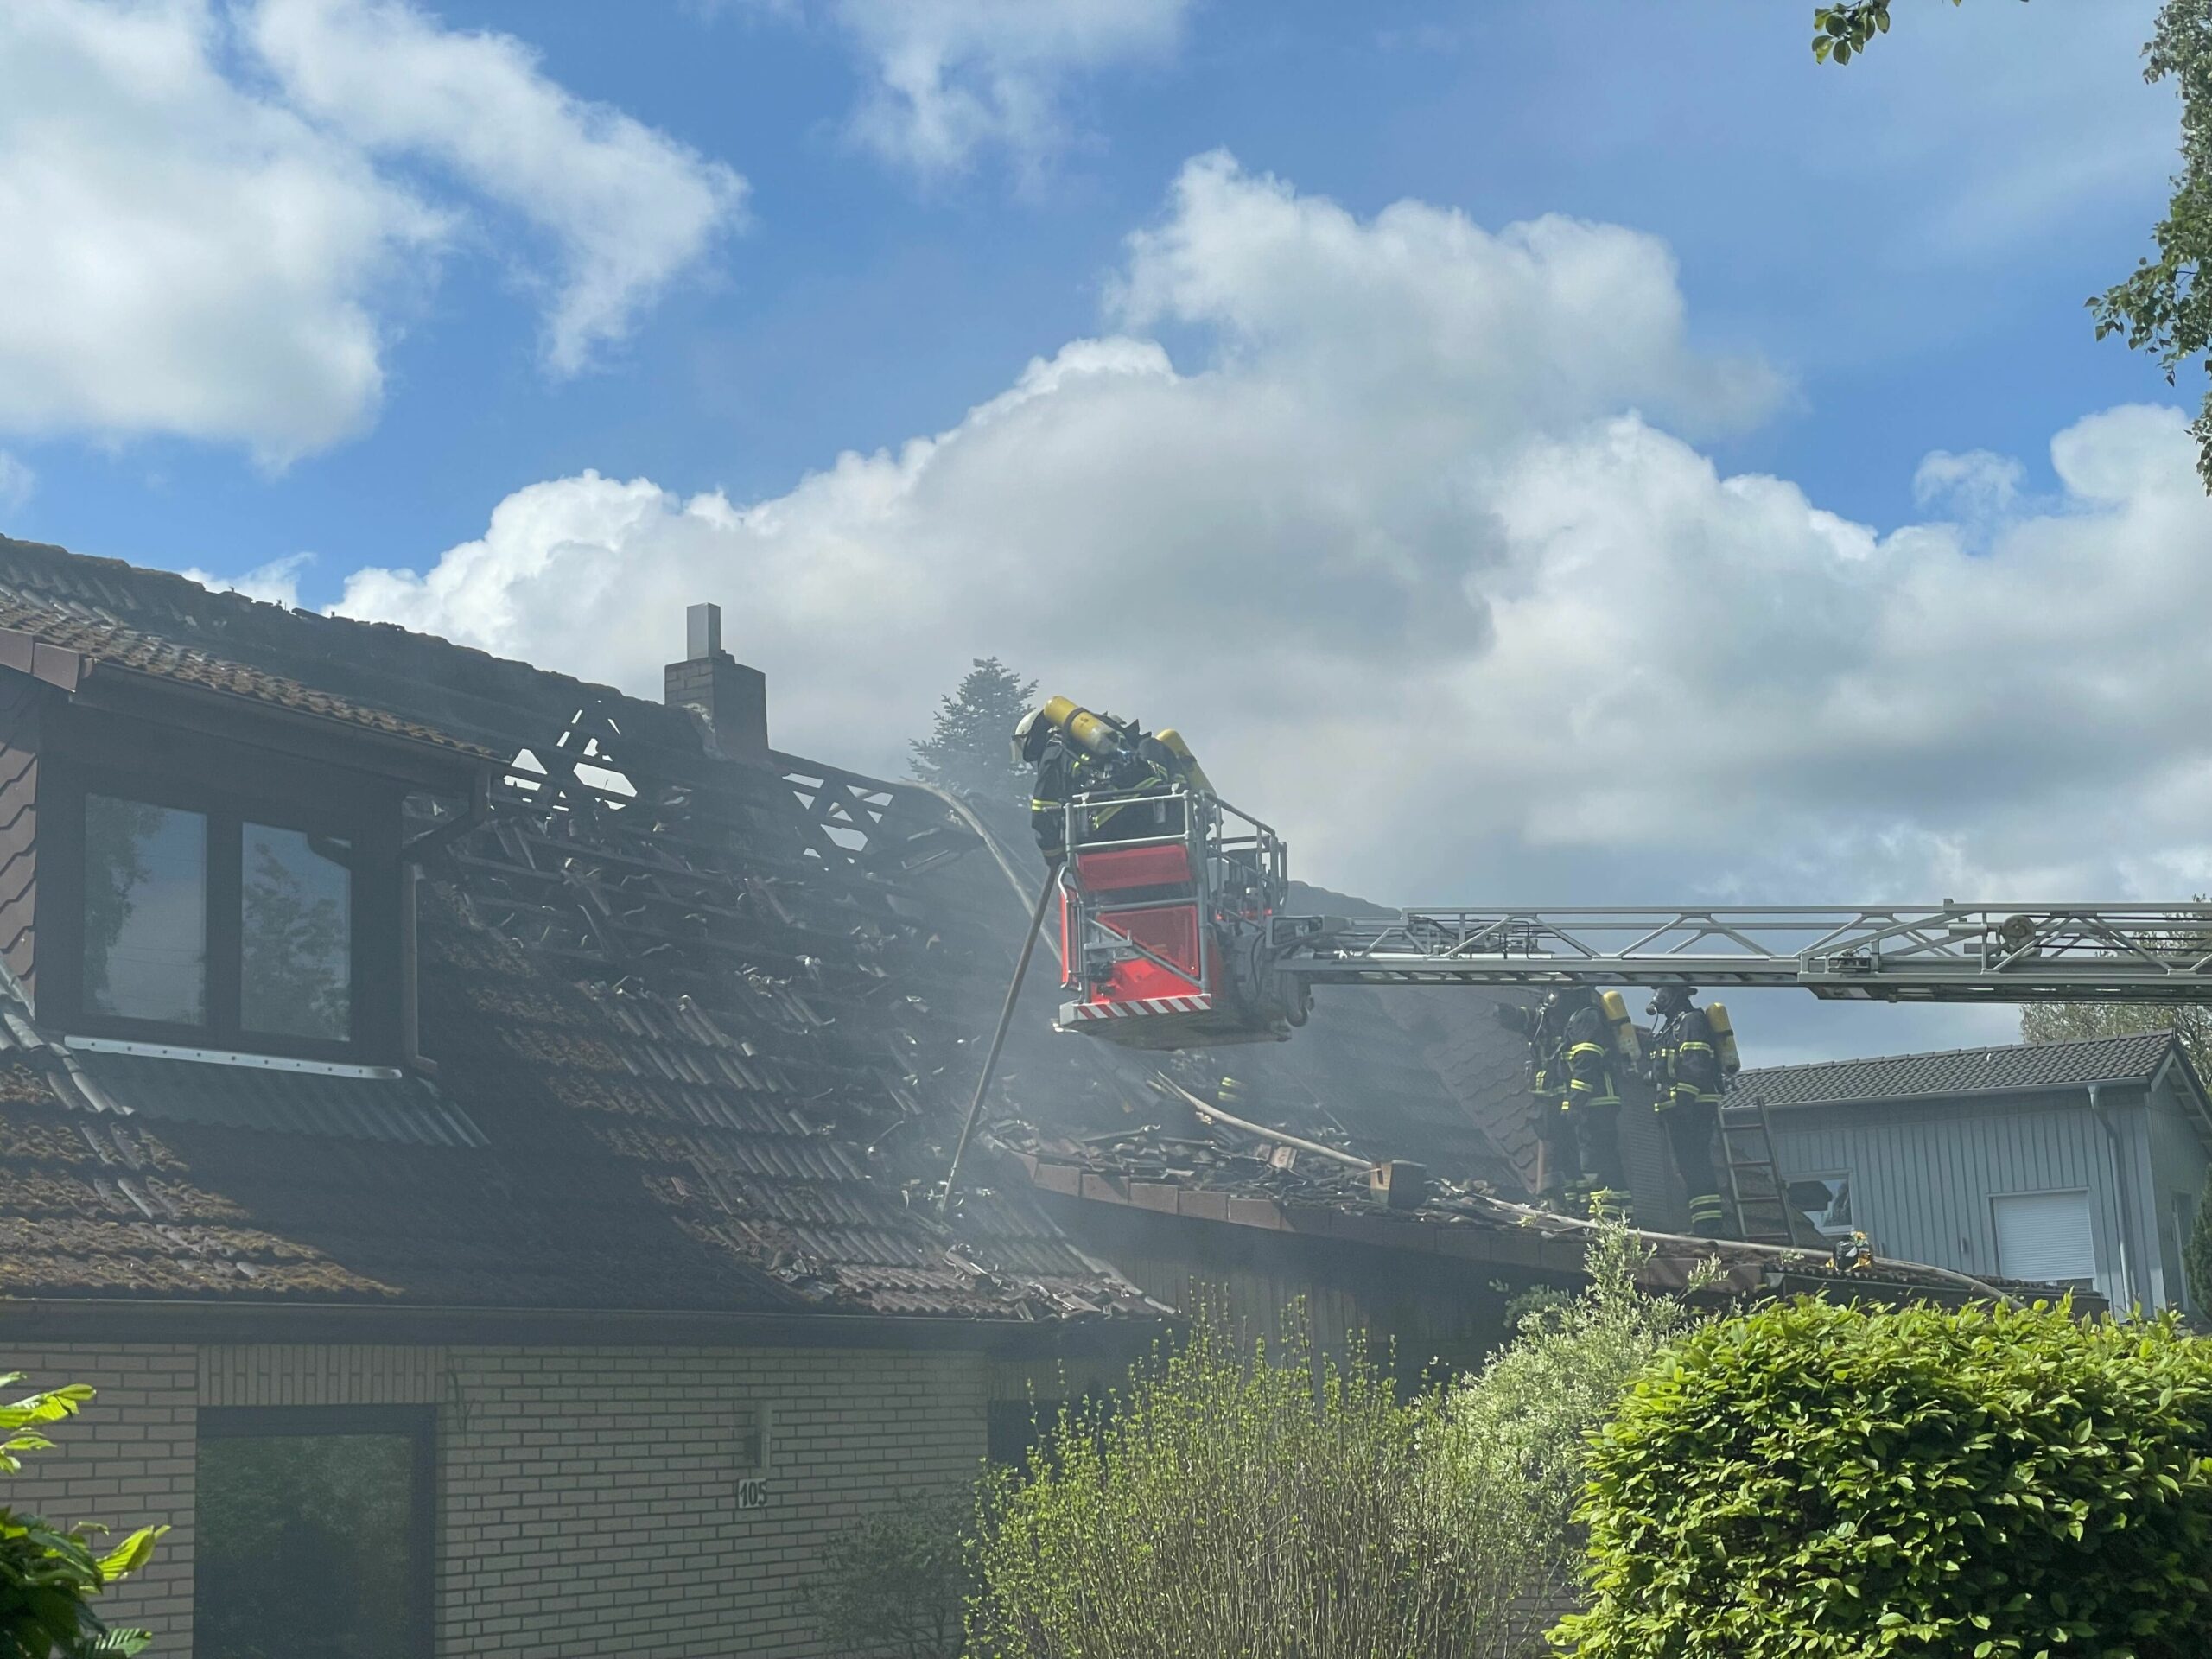 Feuerwehrkräfte entfernten Teile des Dachs, um den Brand zu löschen.